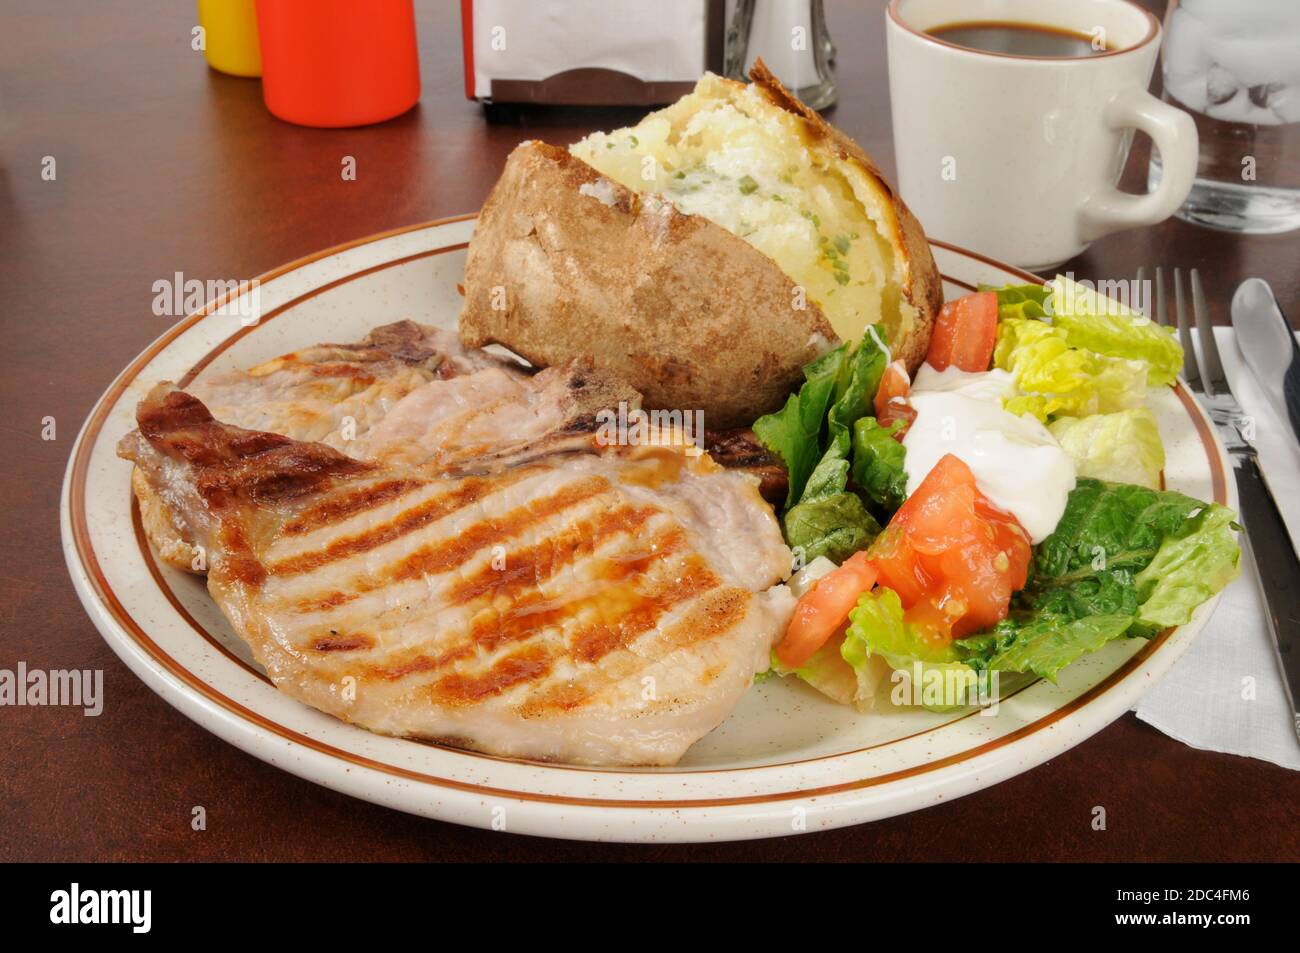 Côtelettes de porc juteuses grillées avec une pomme de terre cuite et une salade Banque D'Images